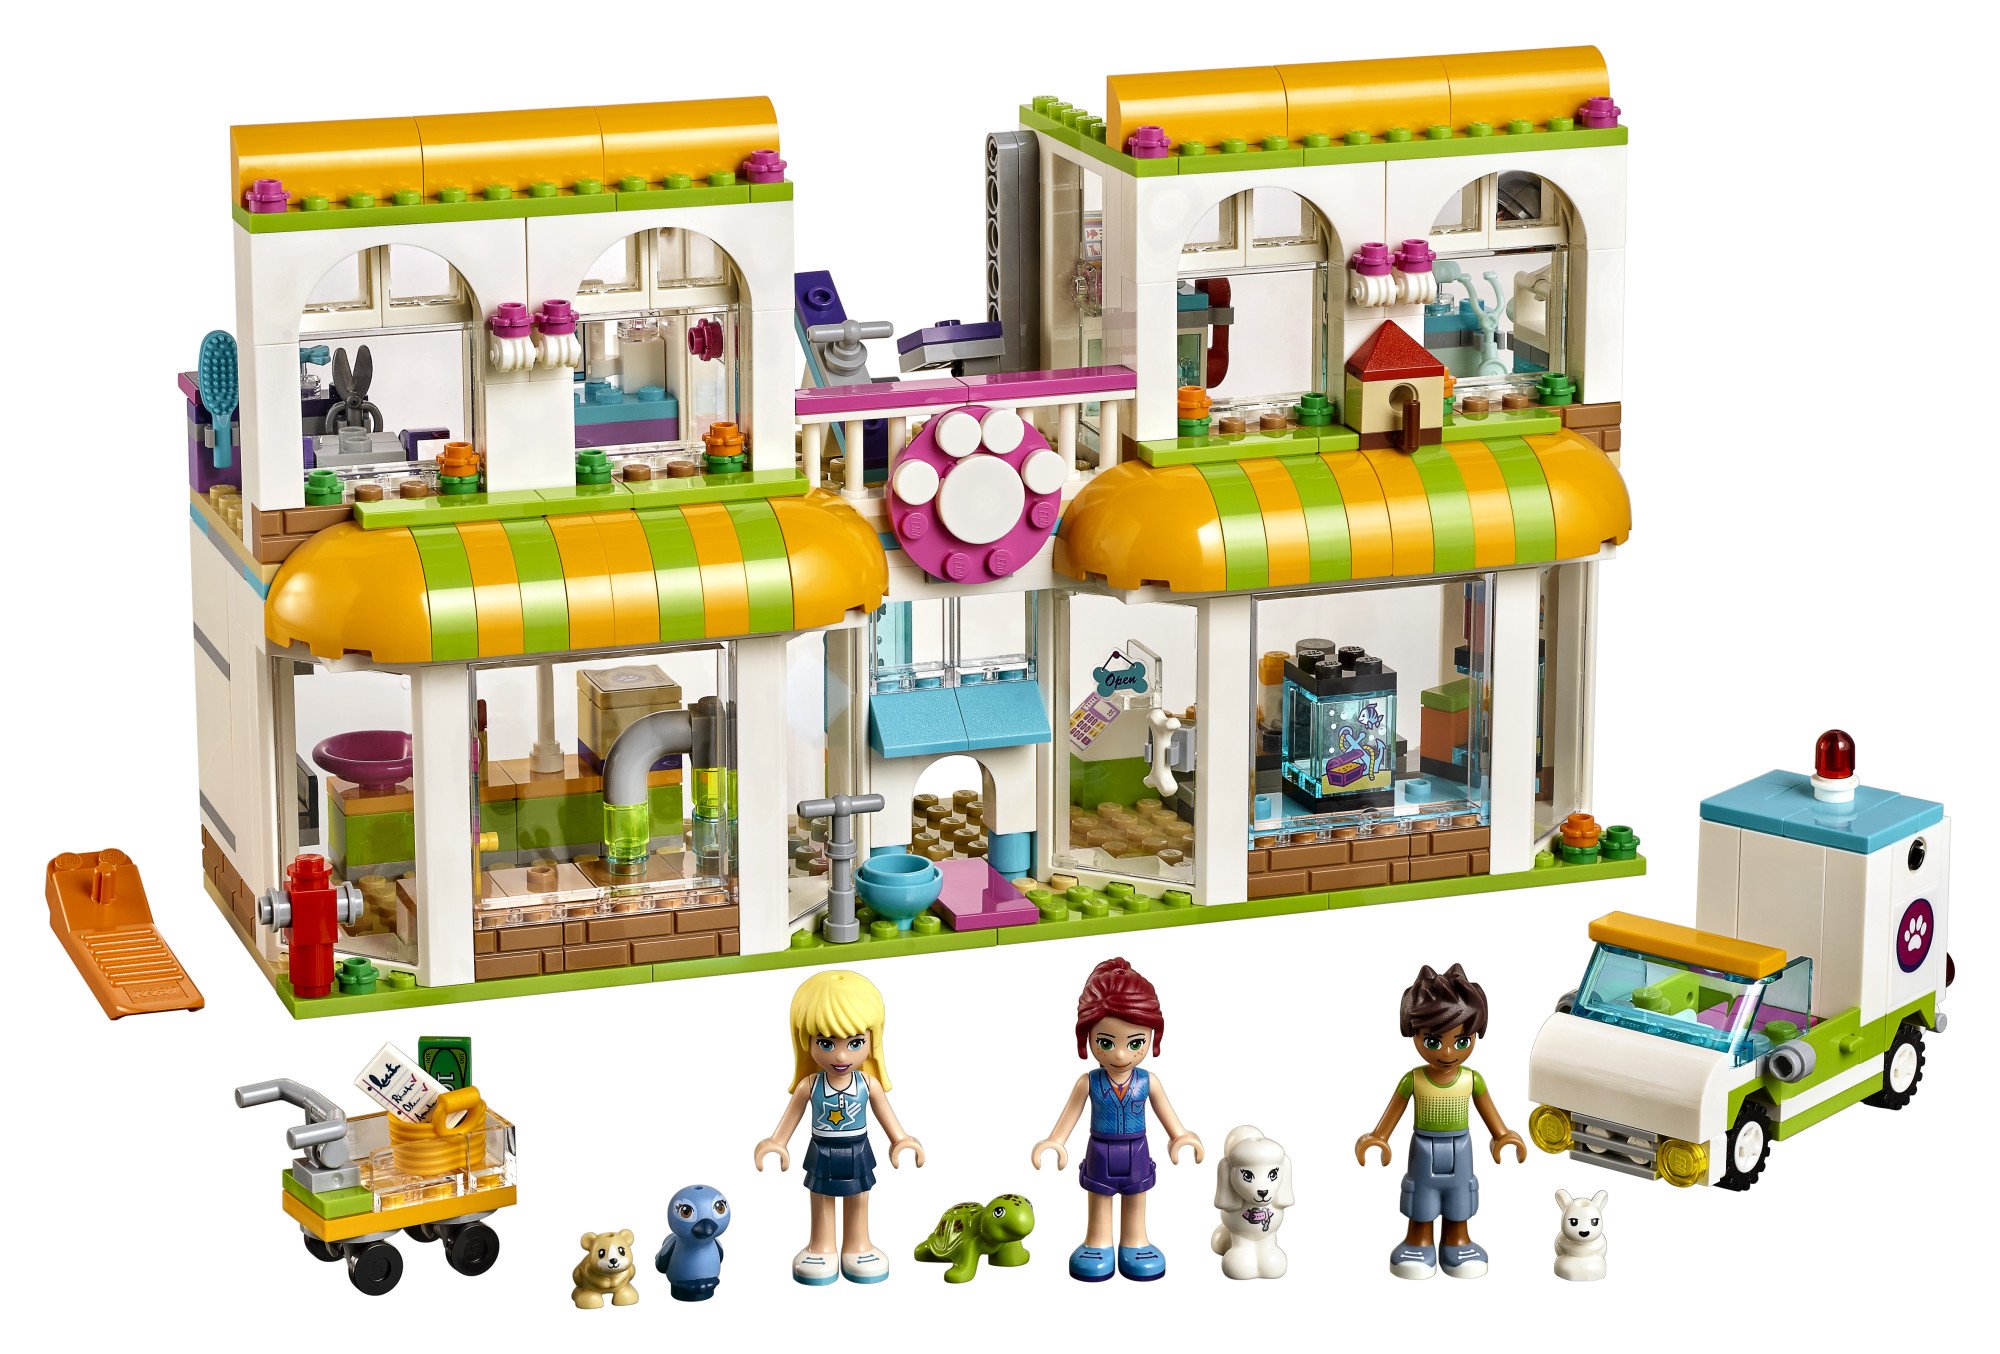 LEGO Friends Heartlake City Pet Center 41345 Building Kit (474 Pieces)